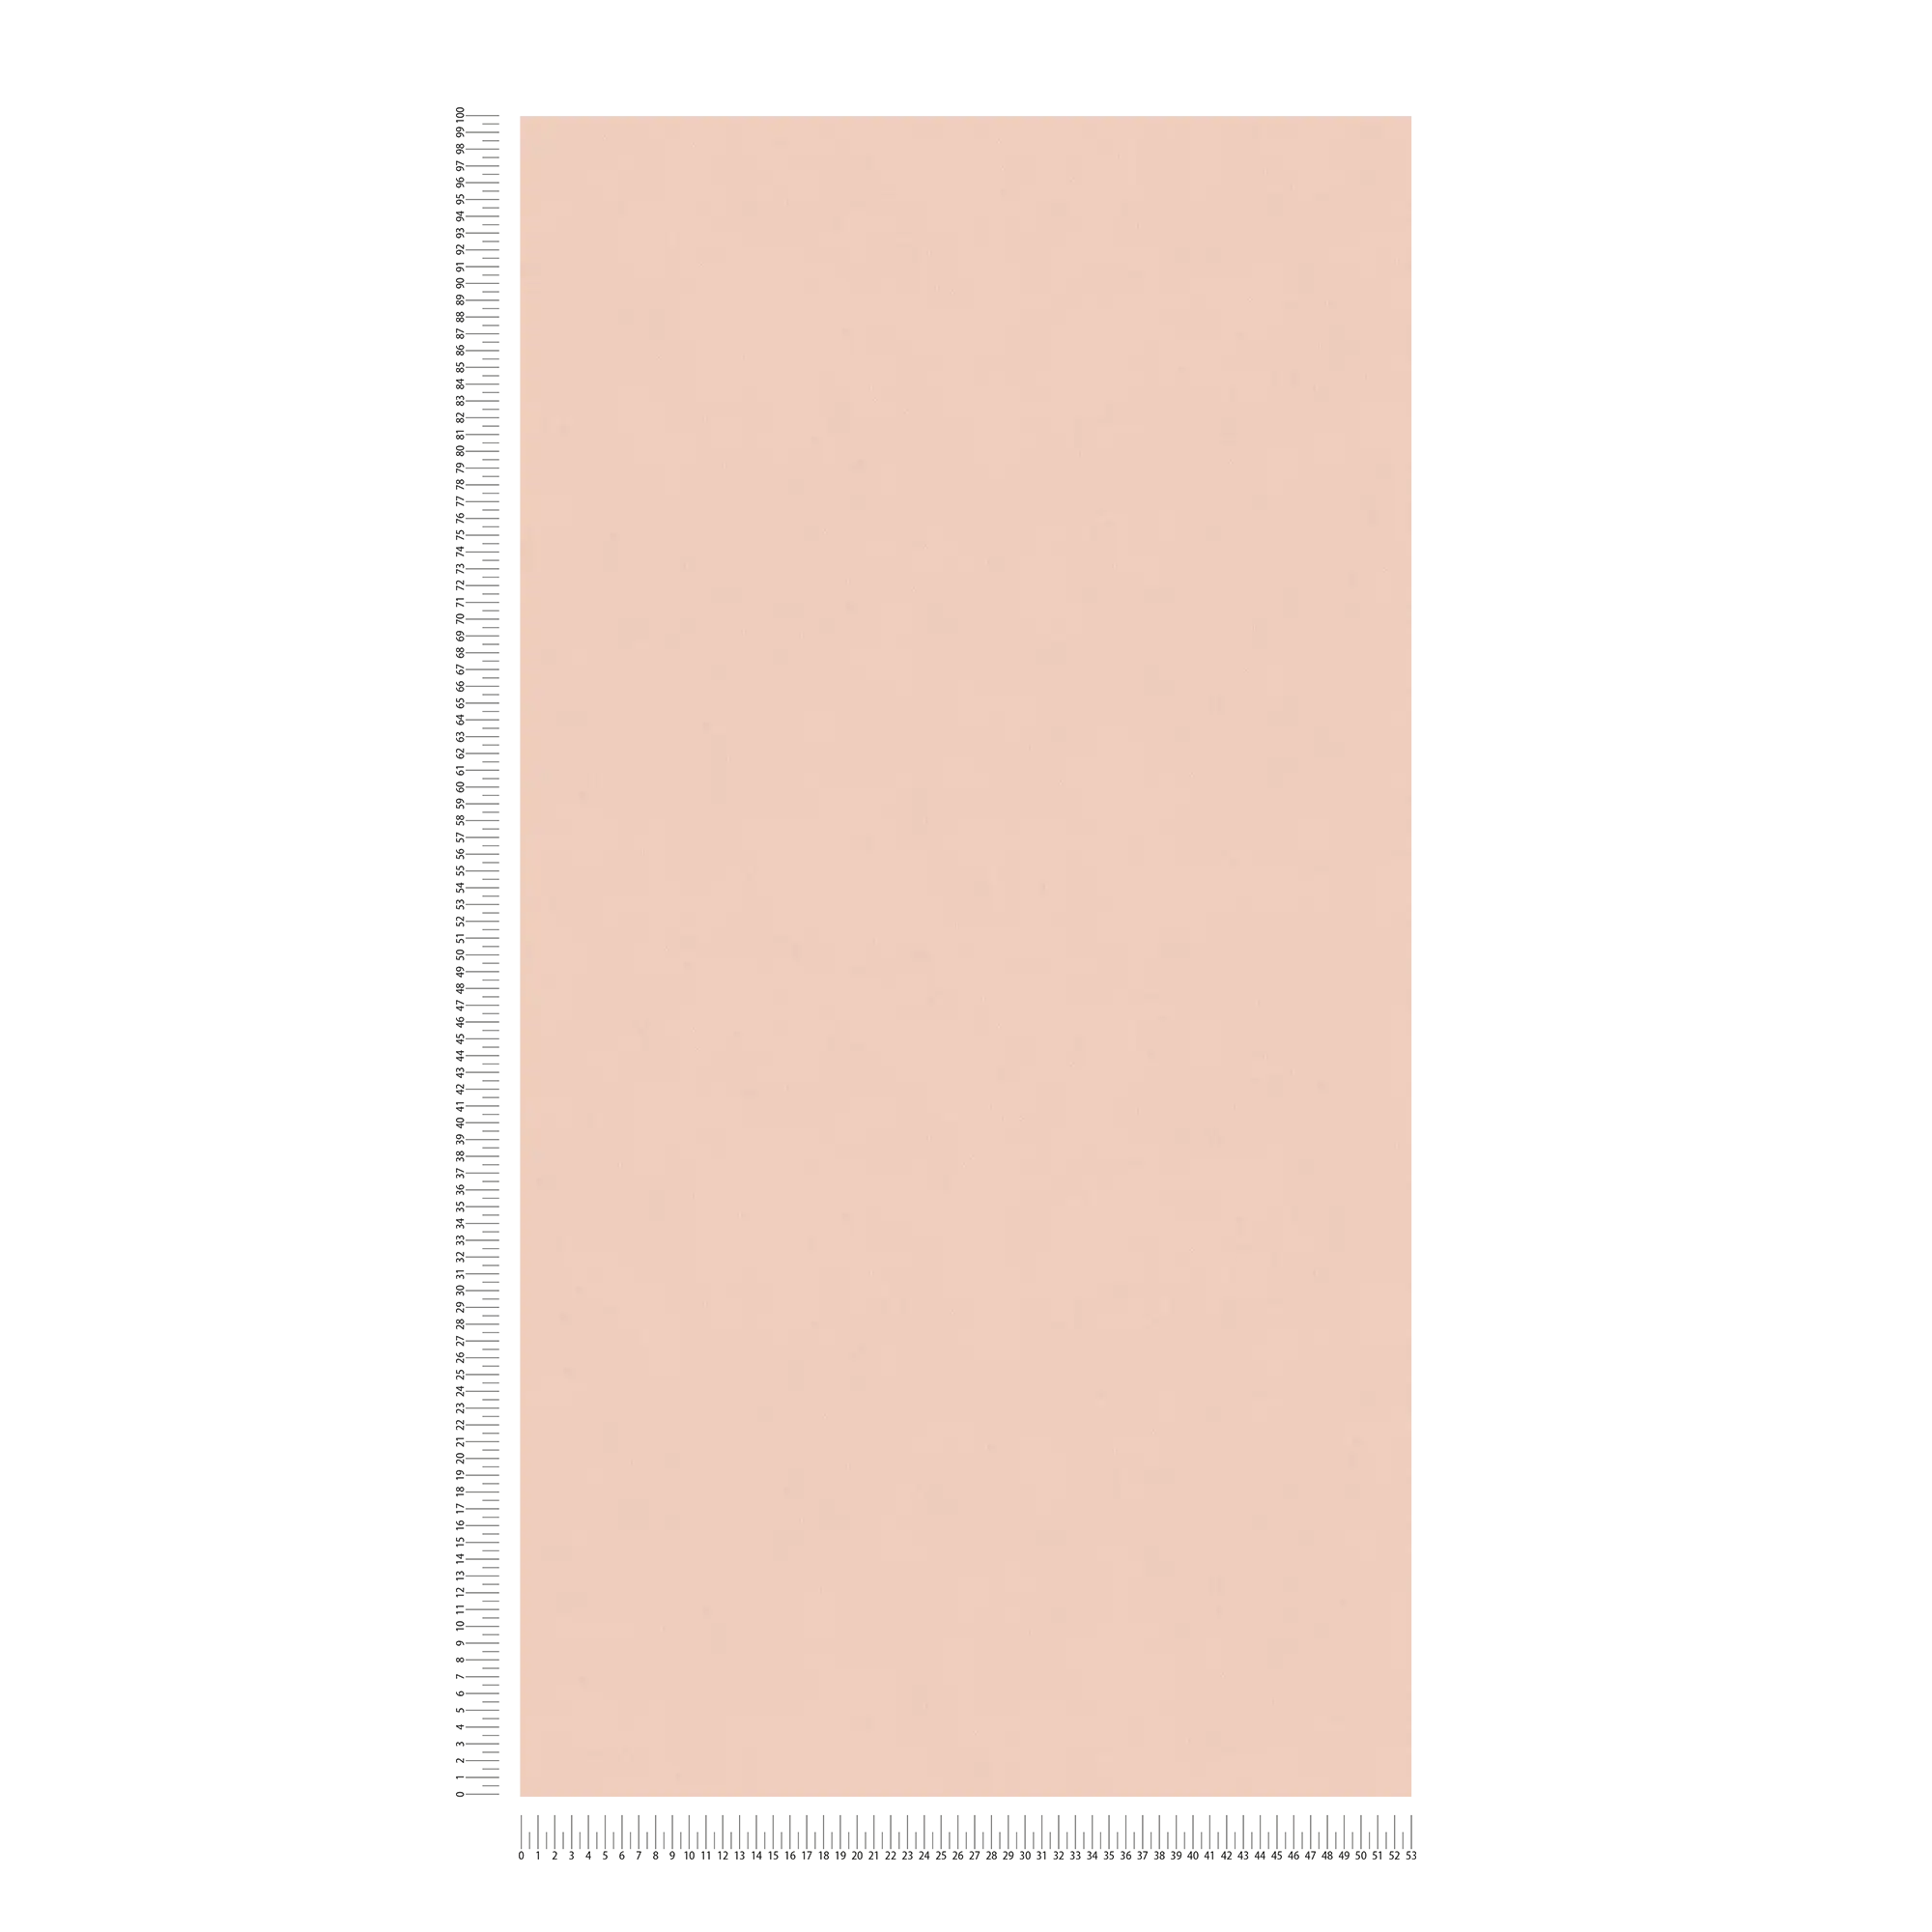             Papel pintado liso con motivos de escayola - rosa
        